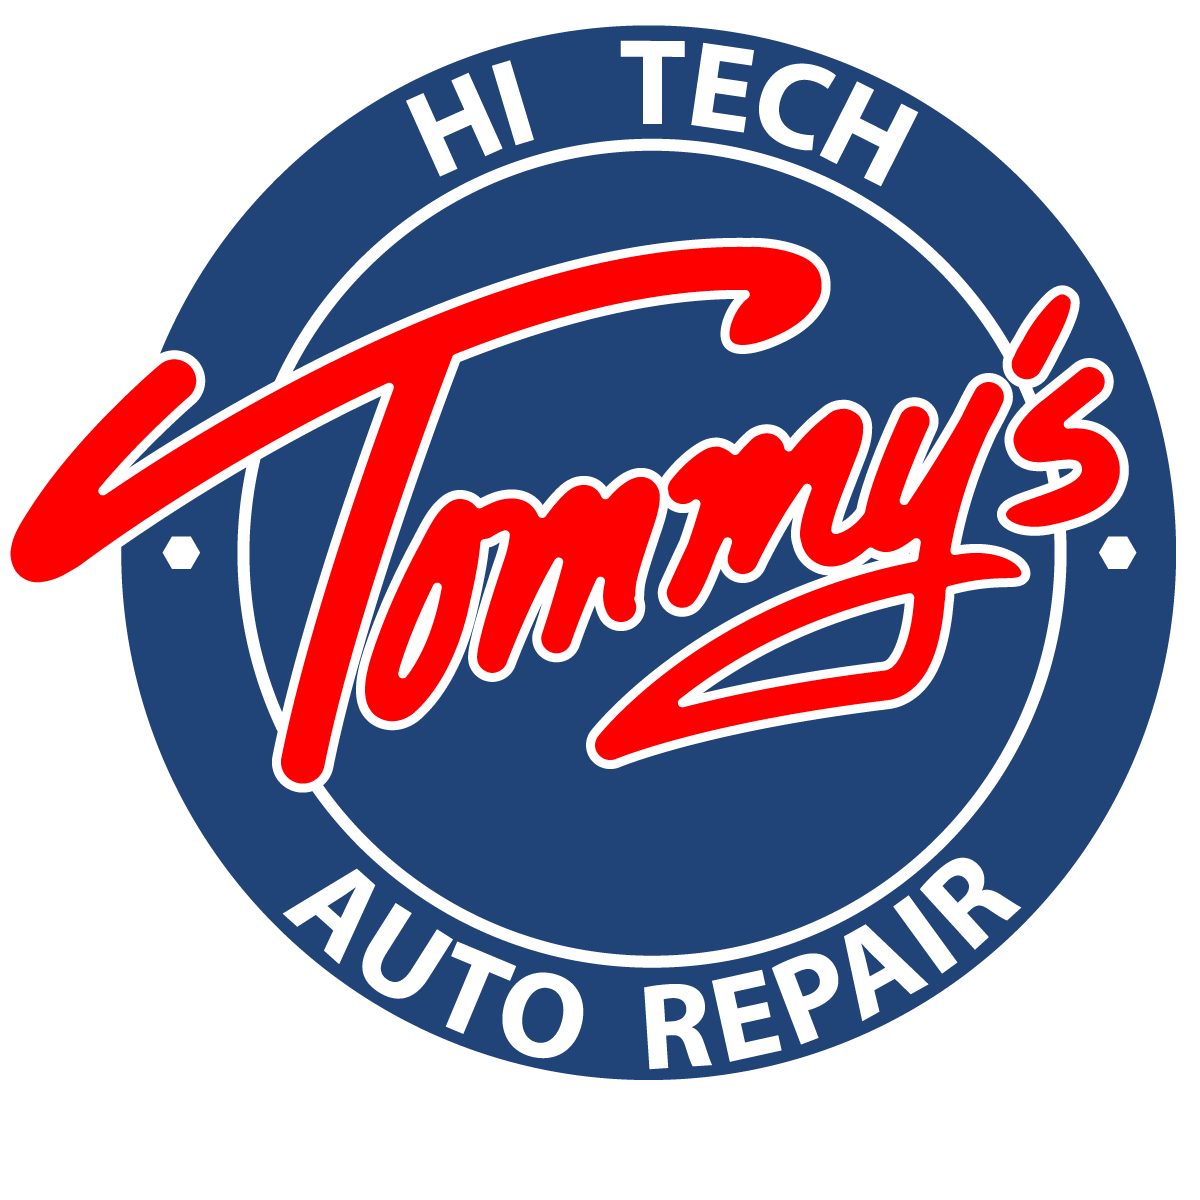 Tommys hi tech auto